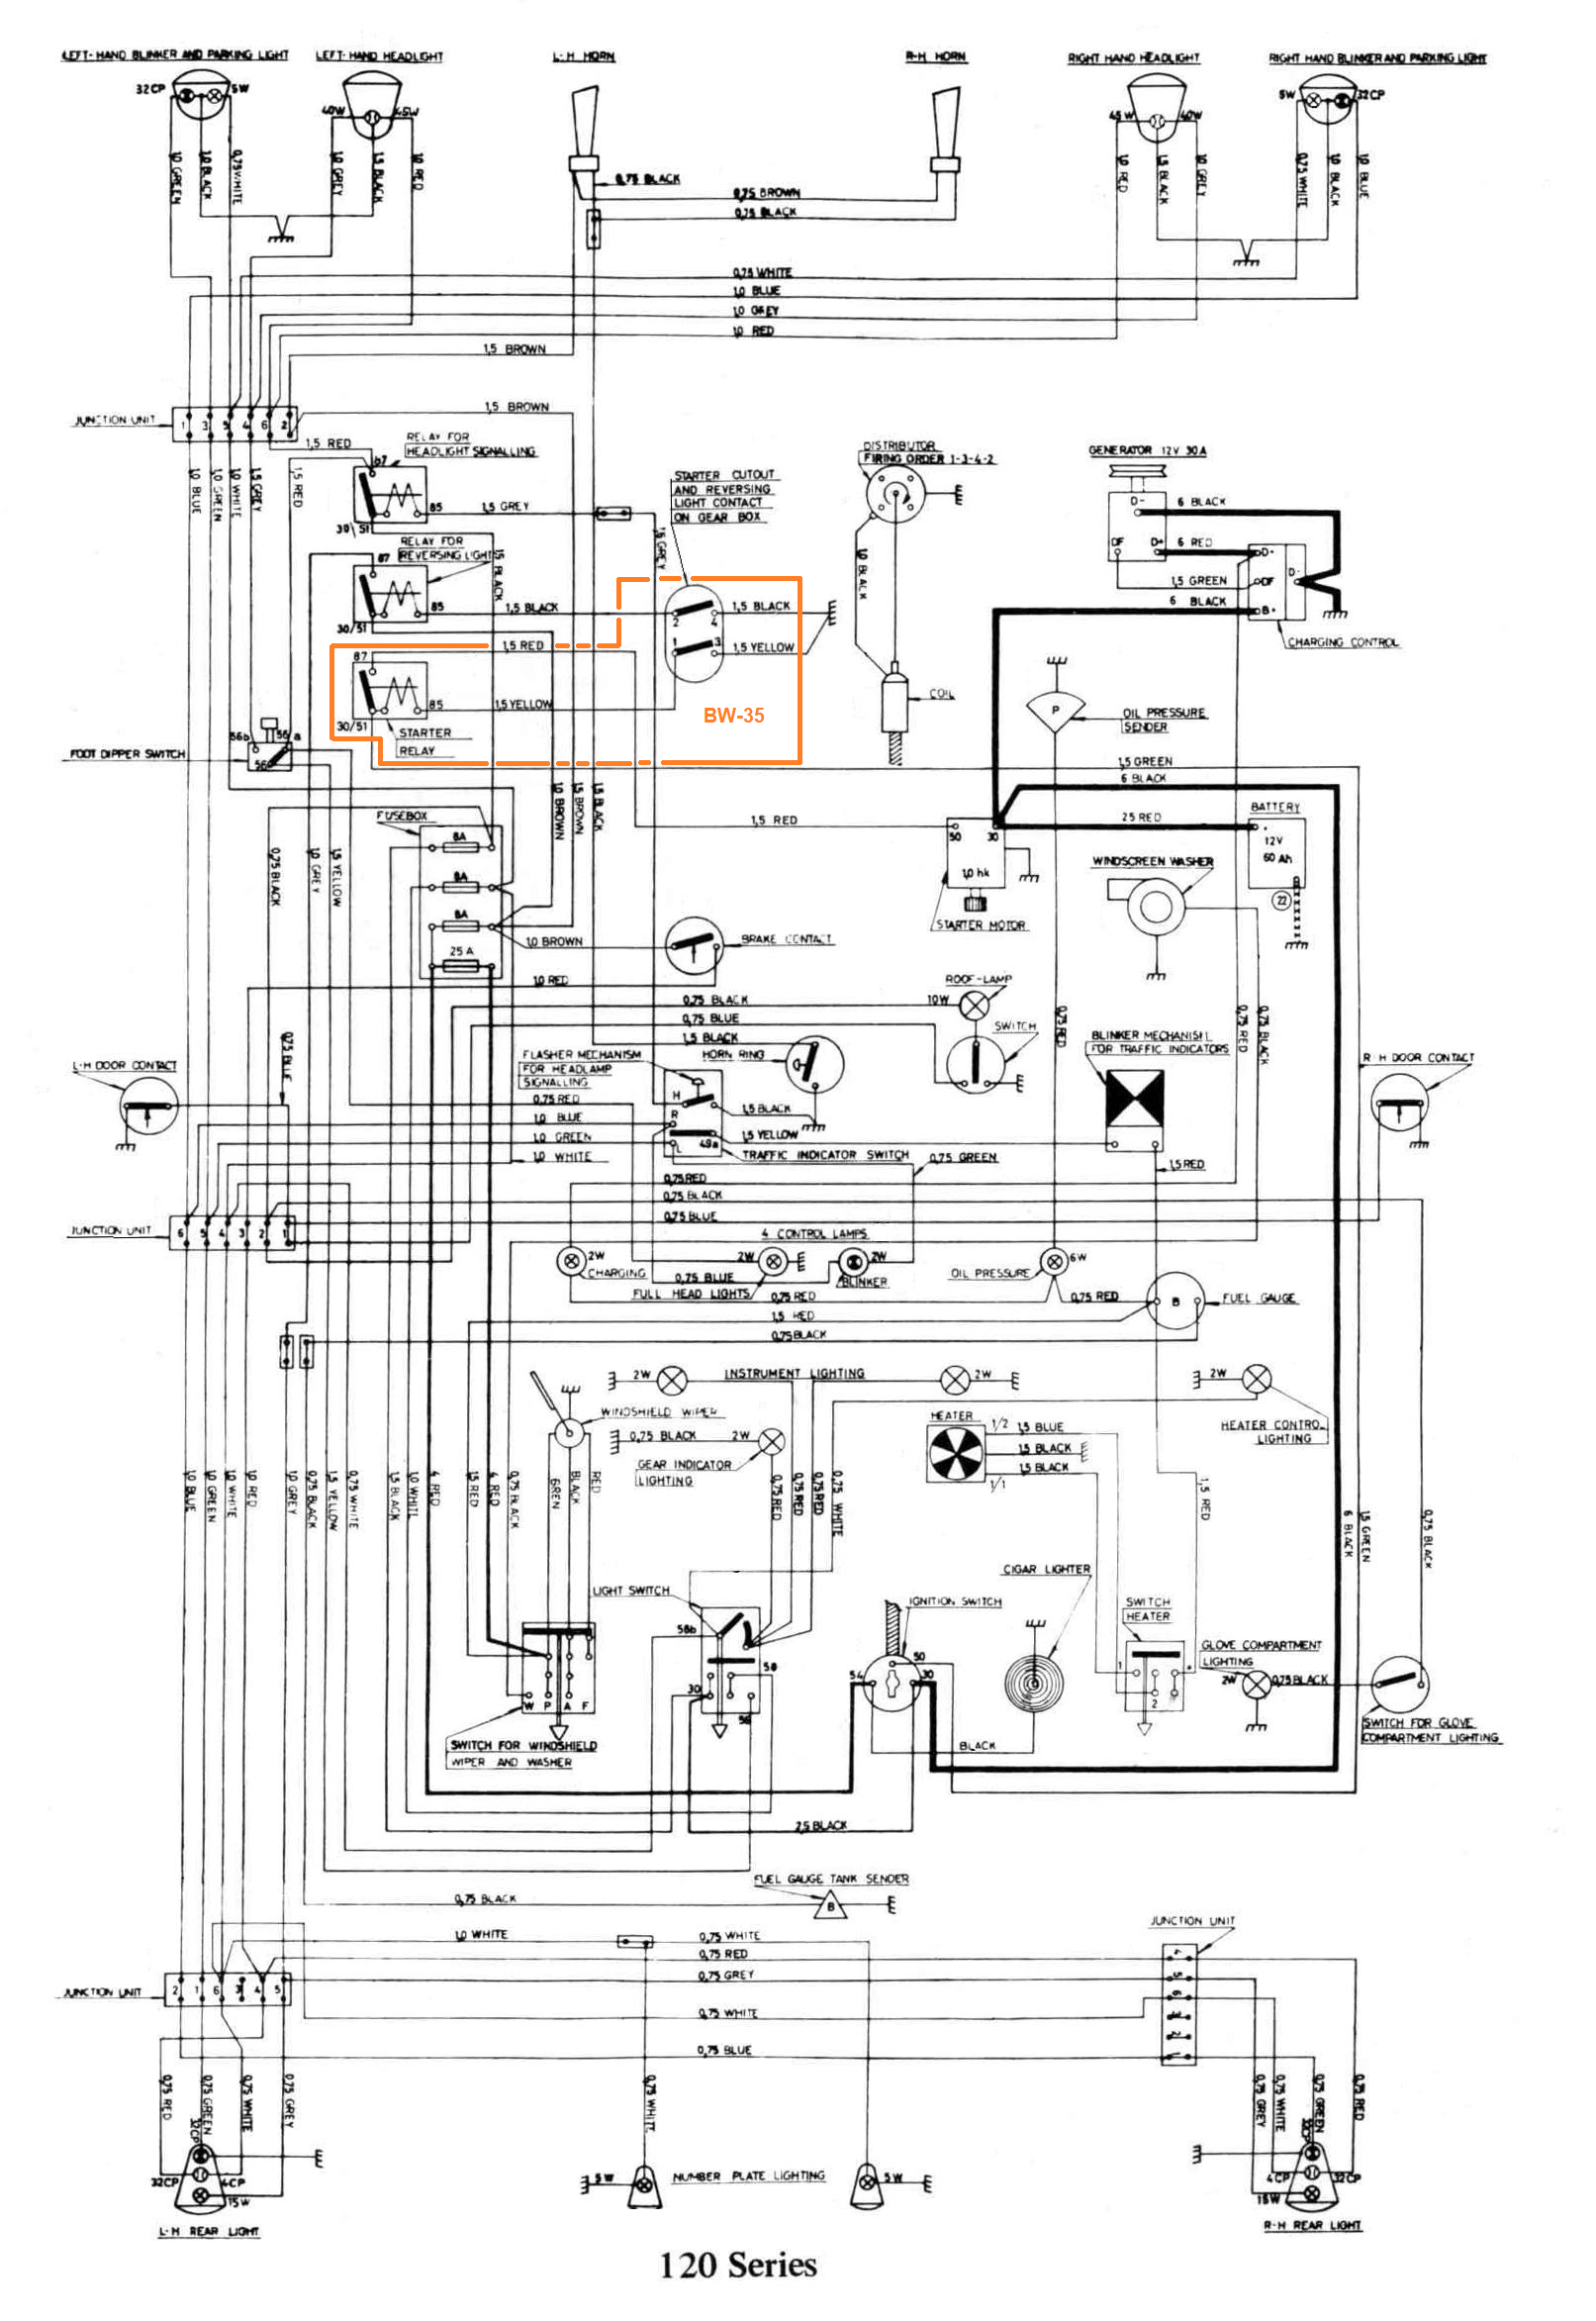 Fe02 Phantom Dji F40 Wiring Diagram Wiring Resources